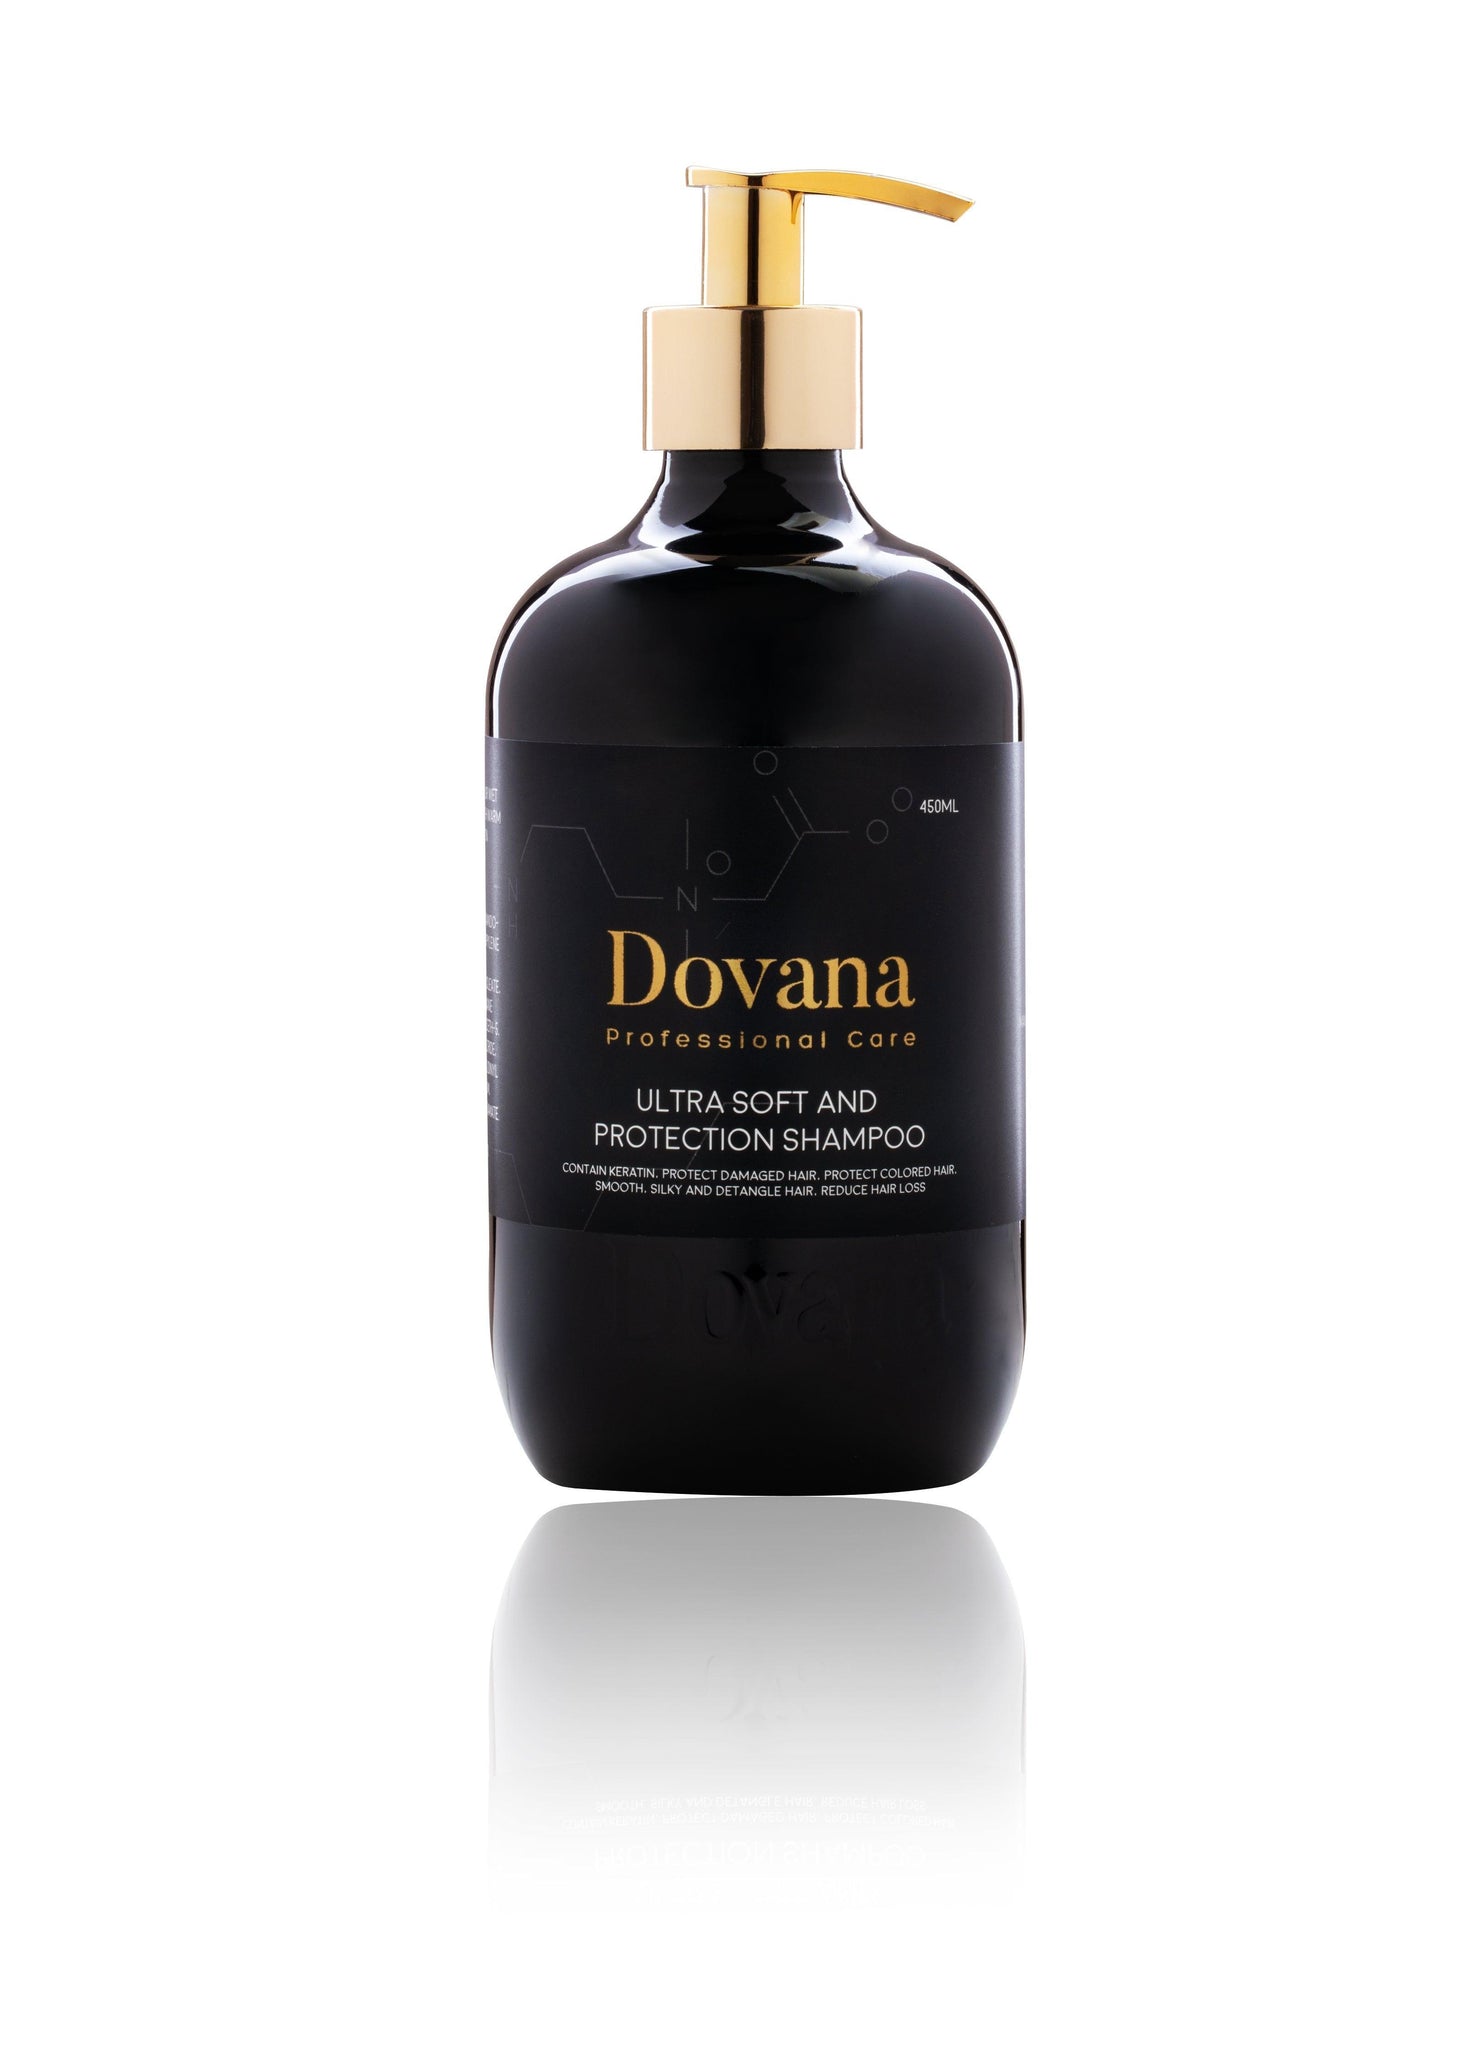 Dovana’s Ultra Soft and Protection Shampoo 450 ml - Mrayti Store